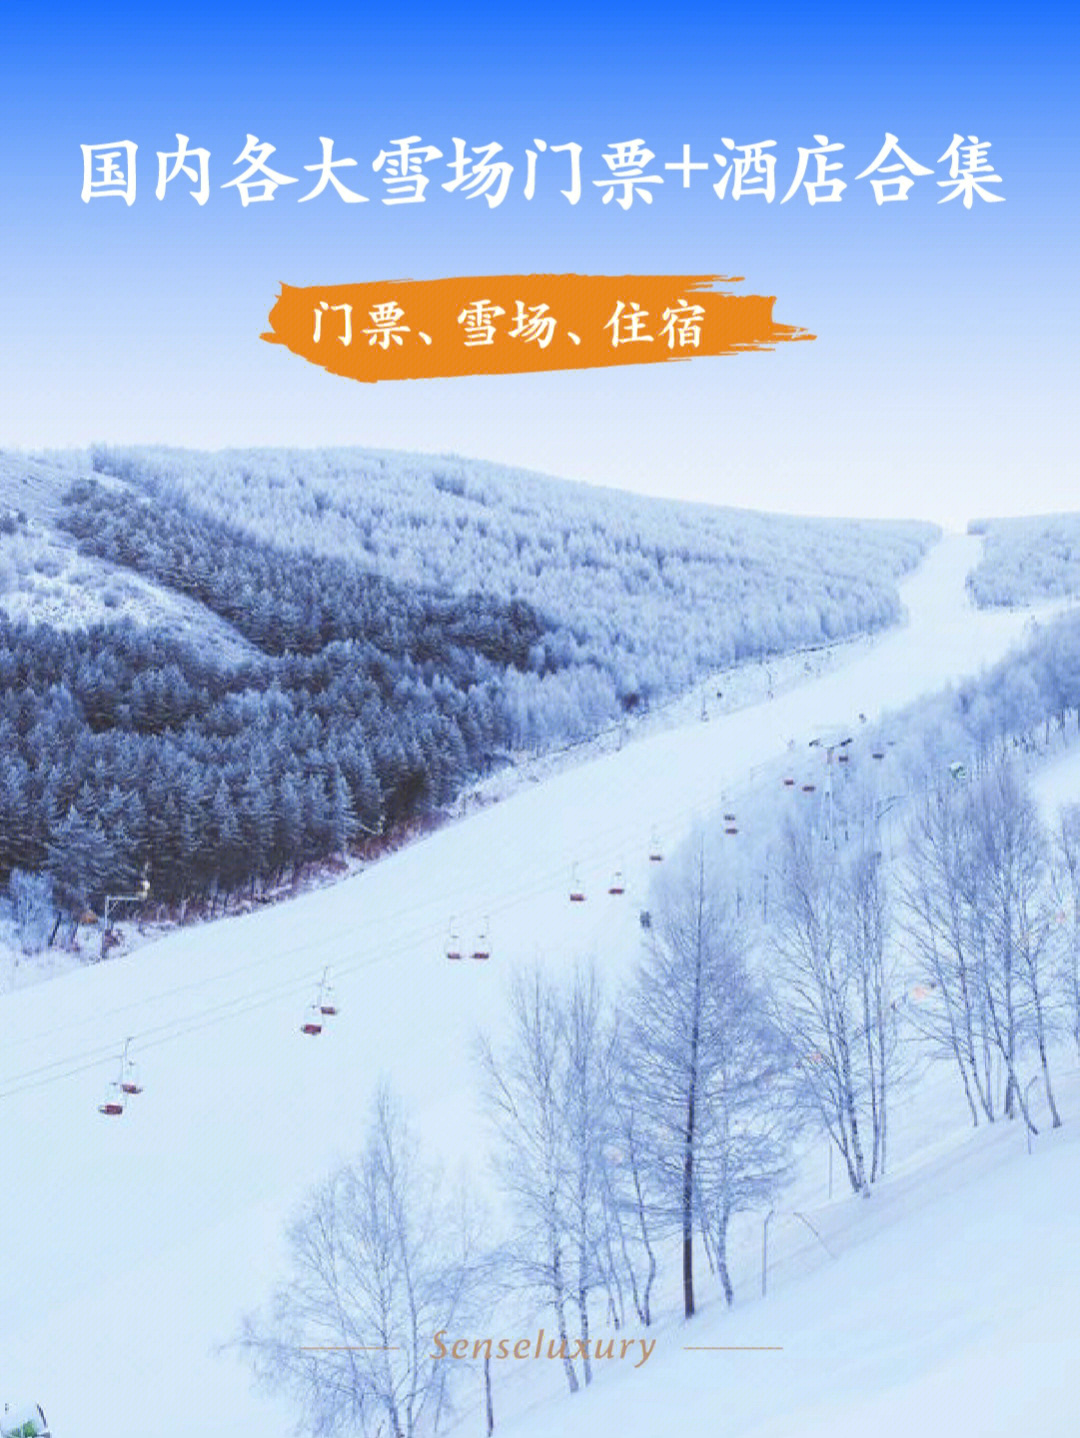 秦皇古道滑雪场门票图片